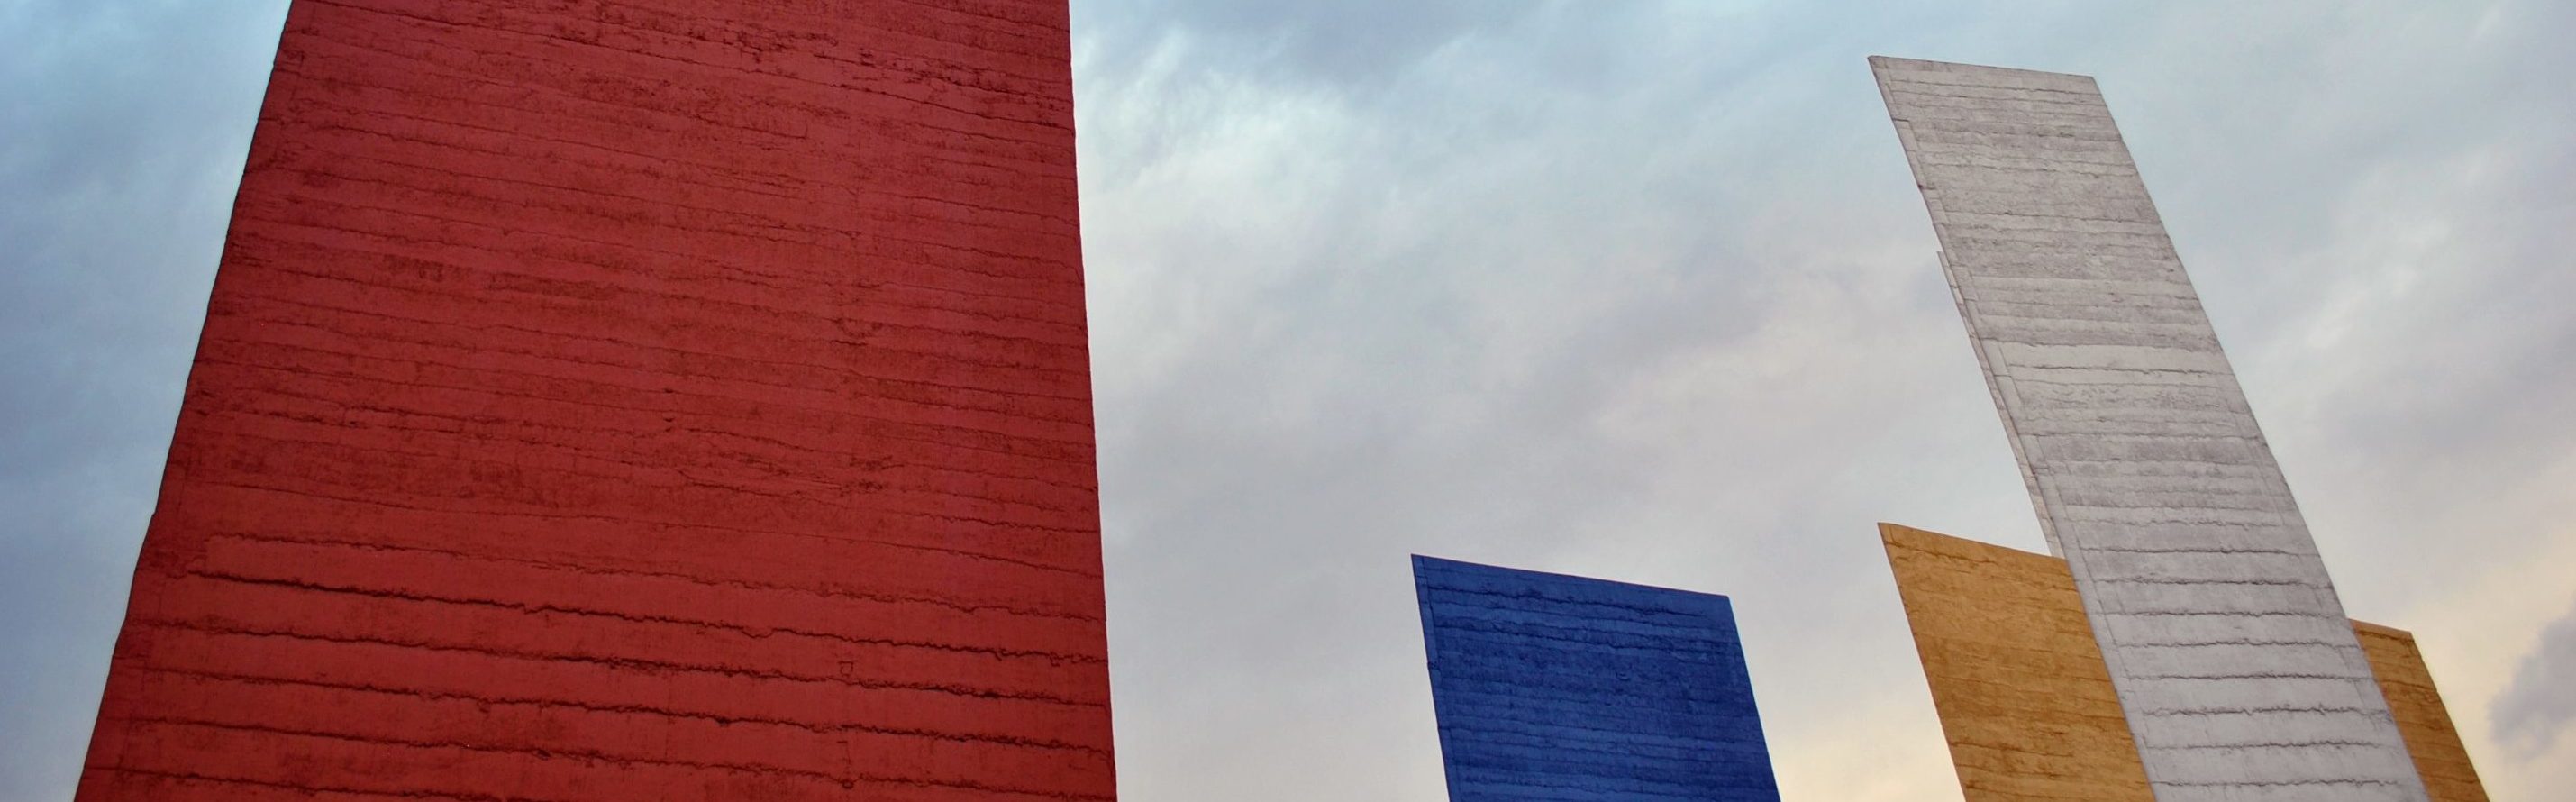 Torres de Satélite en la Ciudad de México, Mathias Goeritz